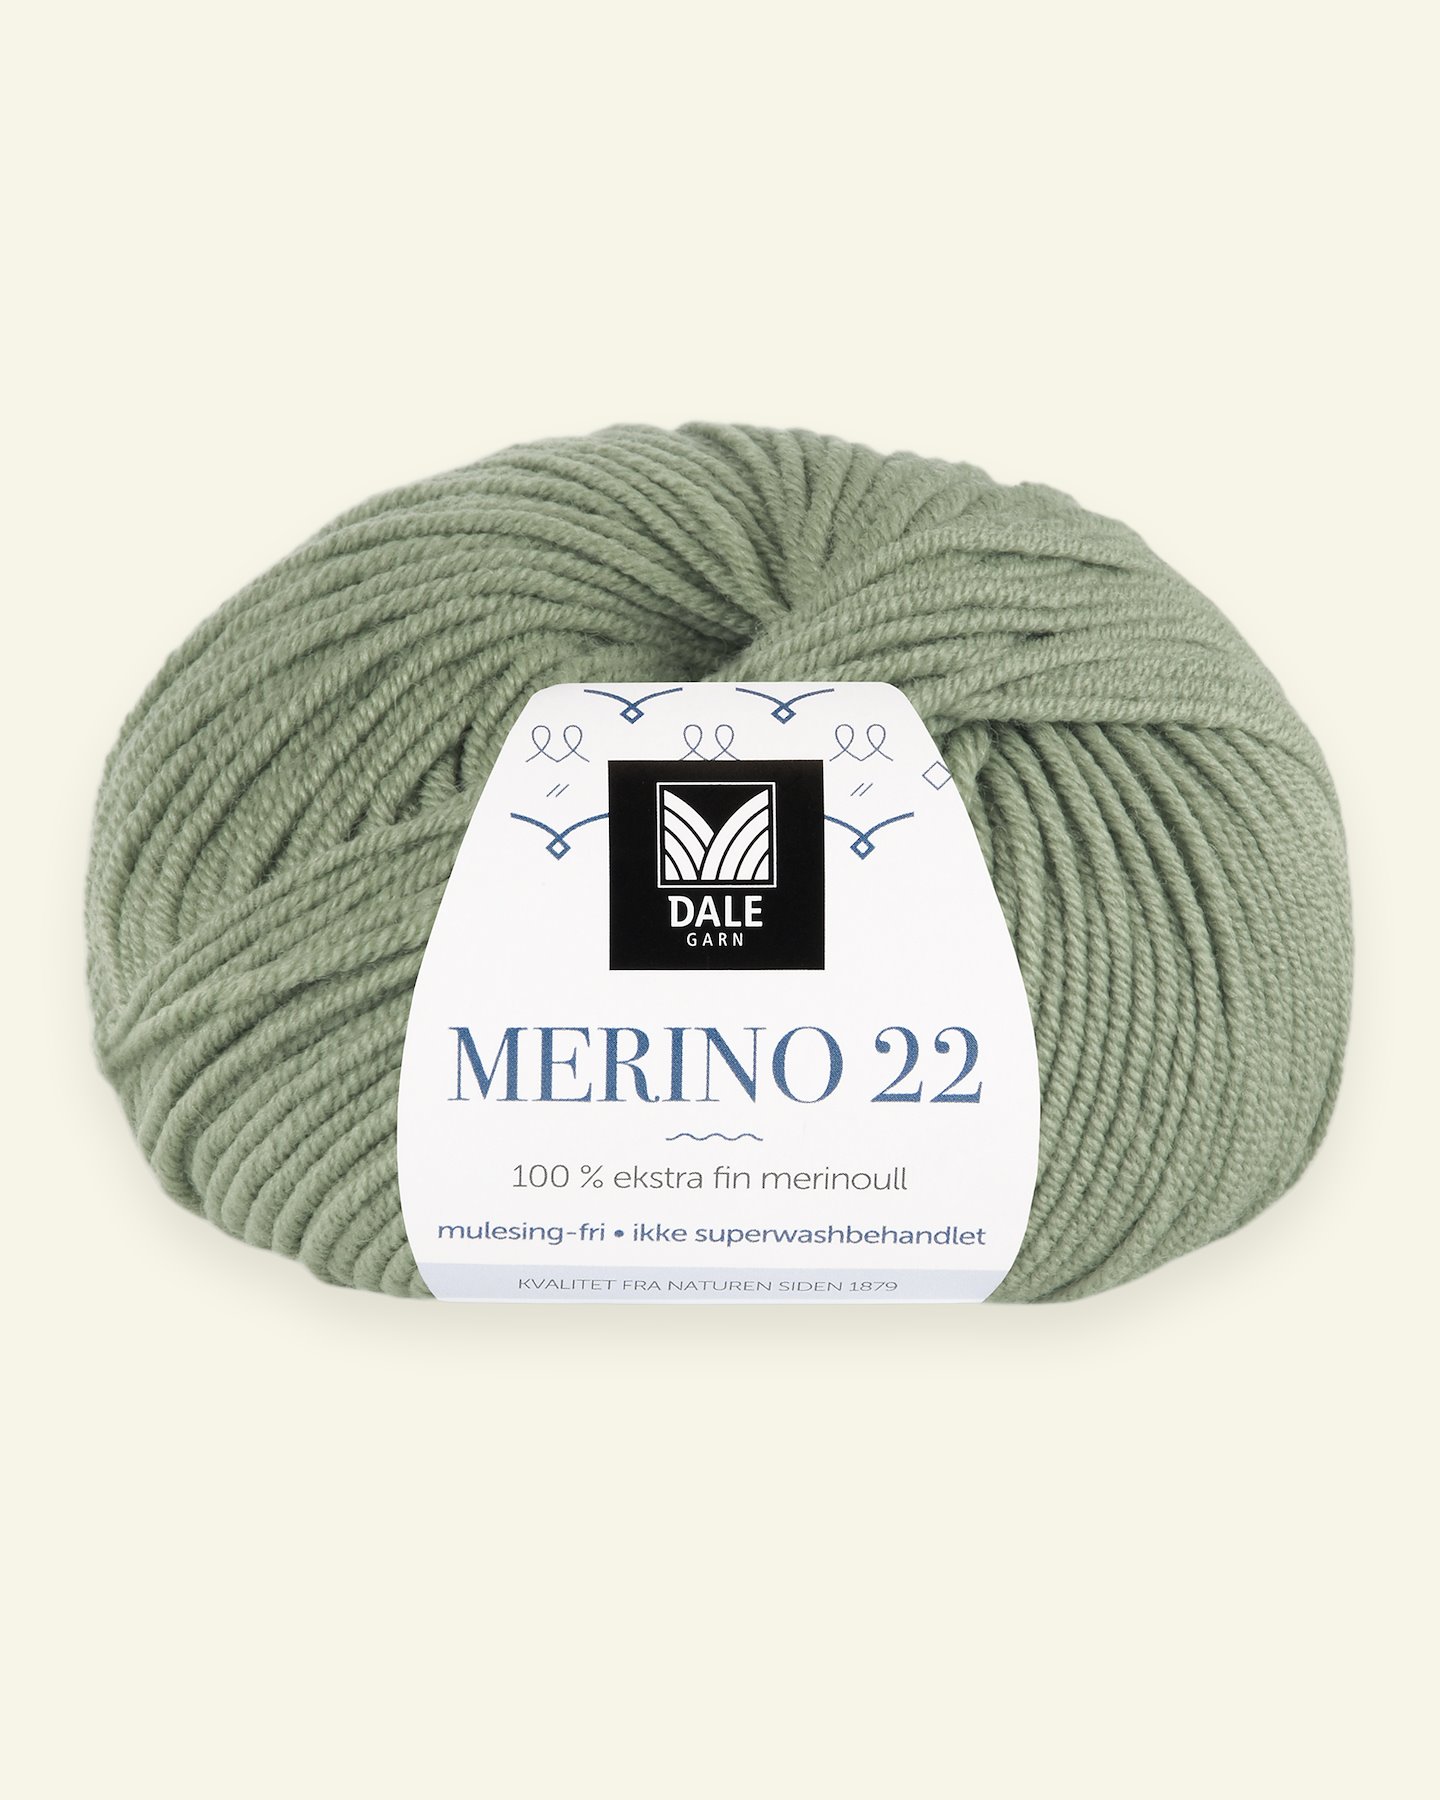 Dale Garn, 100% Extrafeine Merino-Wolle "Merino 22", jadegrün (2013) 90000374_pack